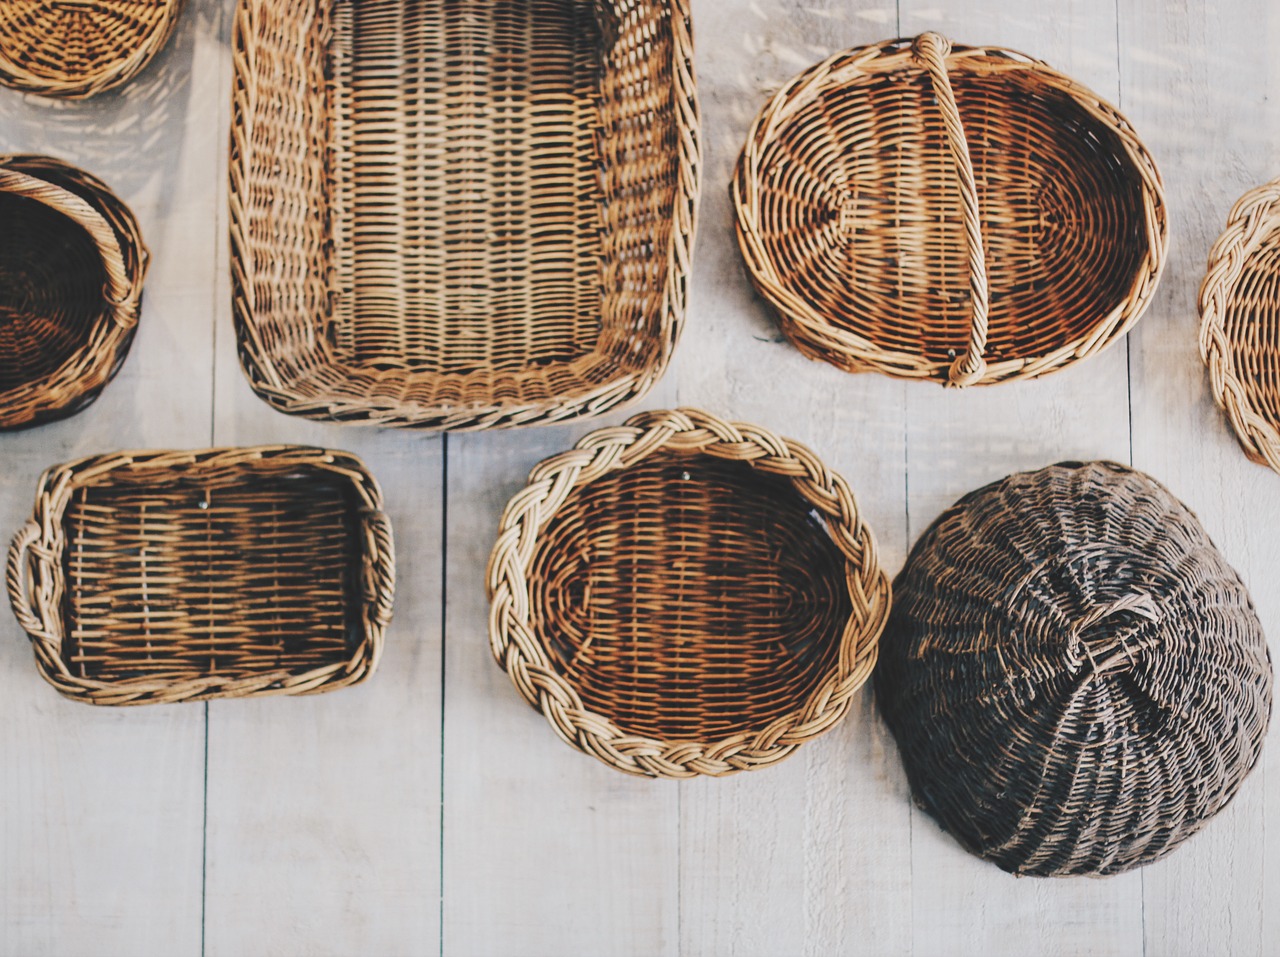 Cómo utilizar las cestas como decoración en el hogar